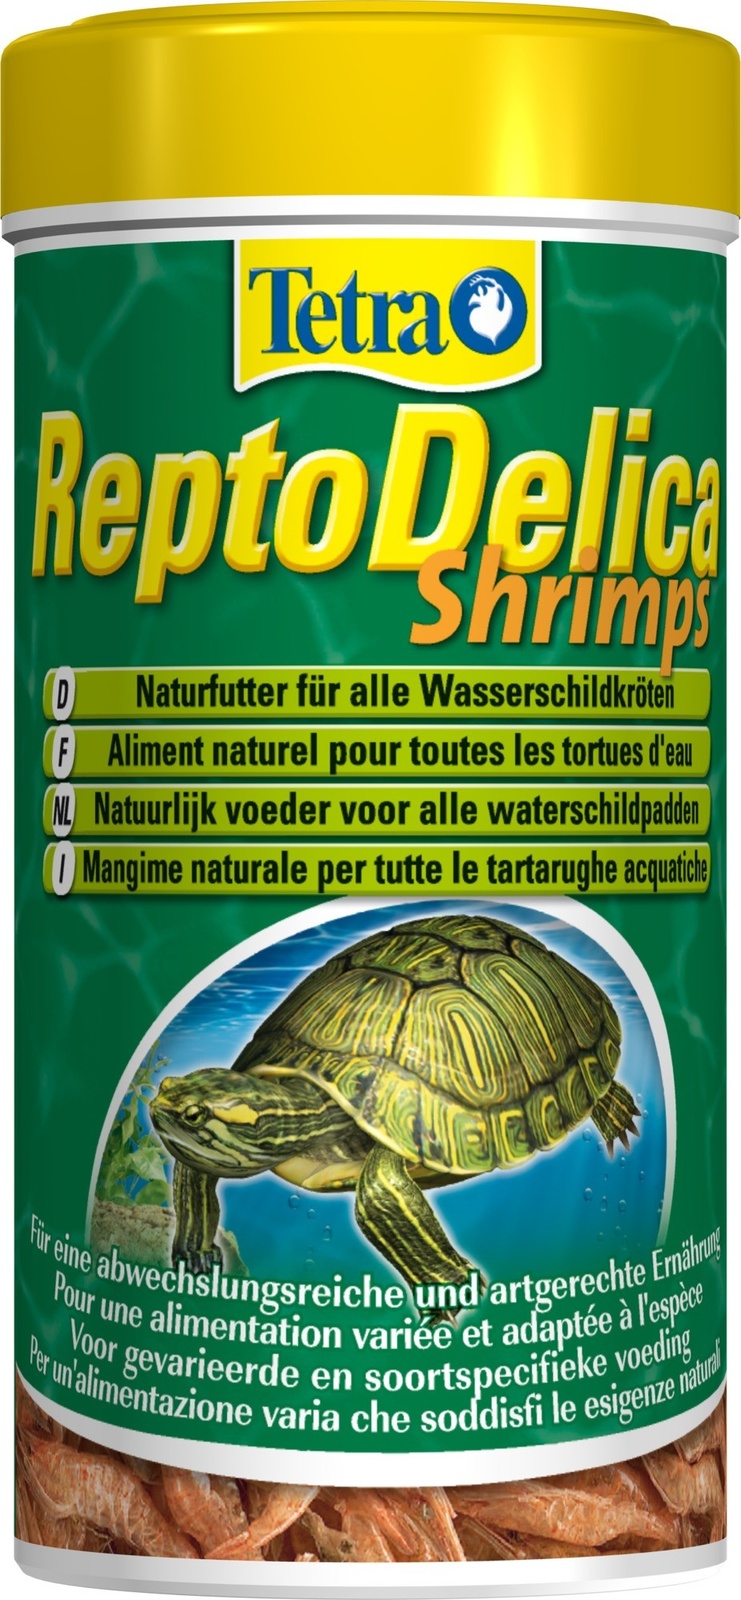 Tetra (корма) Tetra (корма) корм для водных черепах. креветки ReptoDelica Shrimps (20 г) tetra корма tetra корма натуральное лакомство для водных черепах кузнечики 28 г